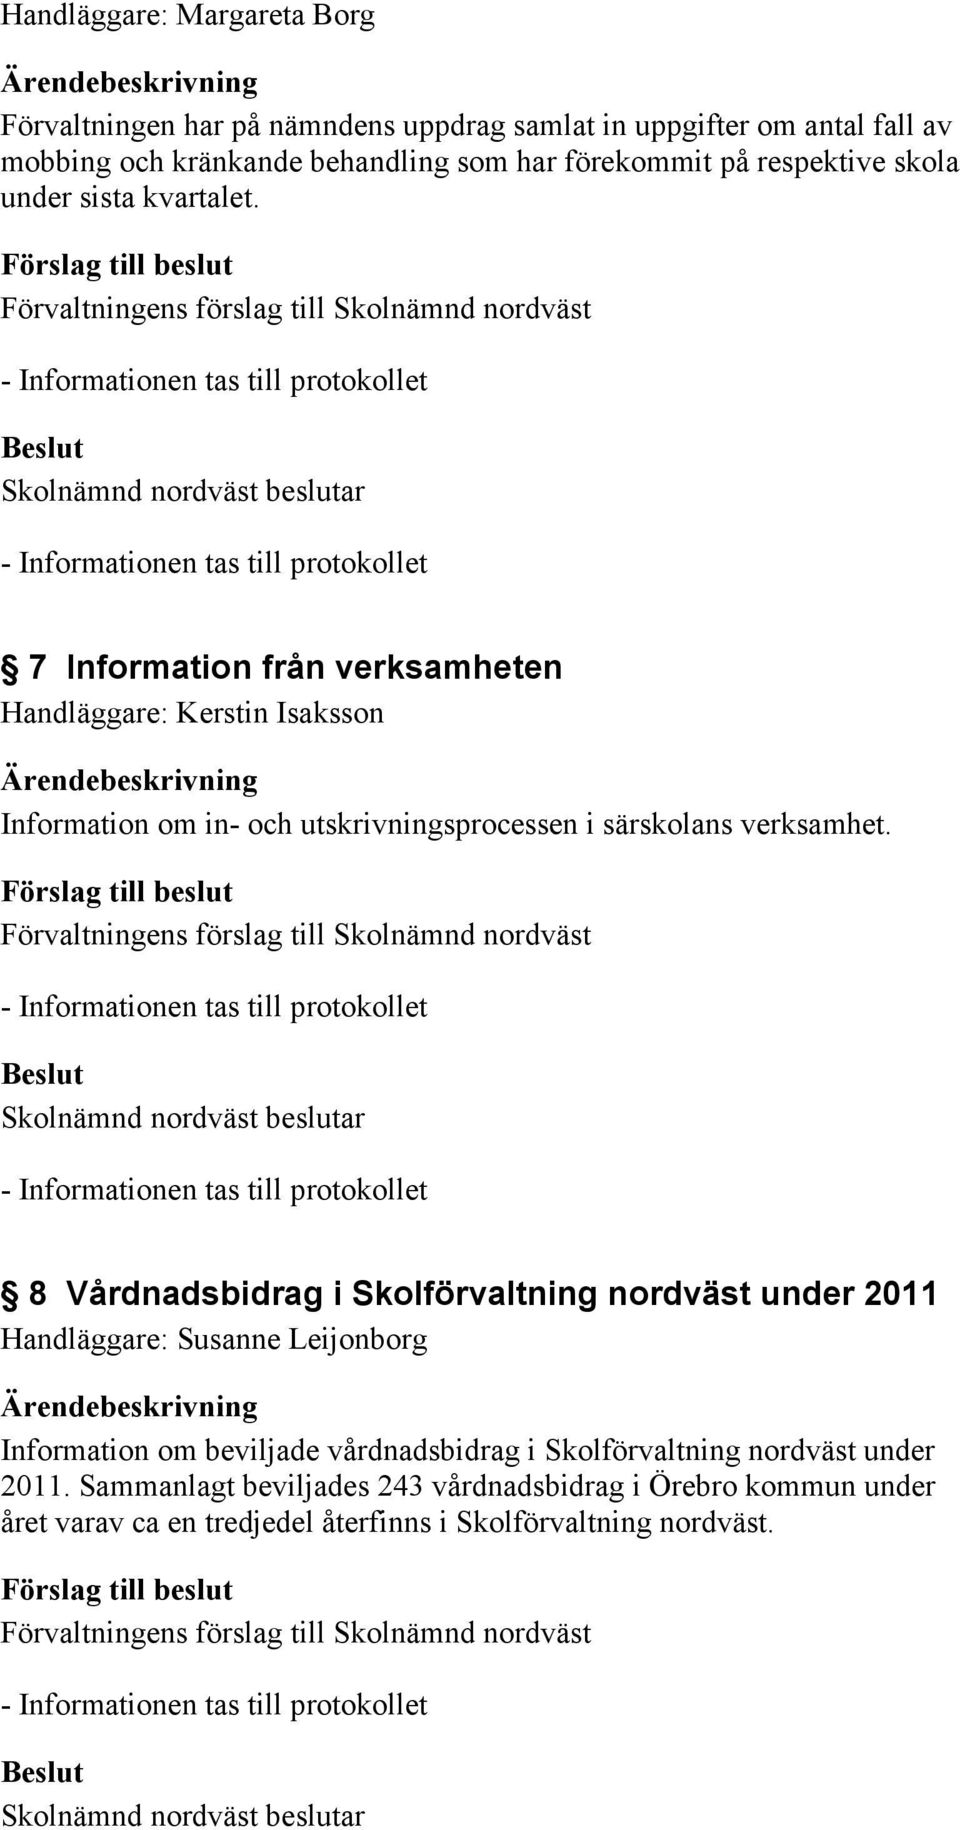 7 Information från verksamheten Handläggare: Kerstin Isaksson Information om in- och utskrivningsprocessen i särskolans verksamhet.